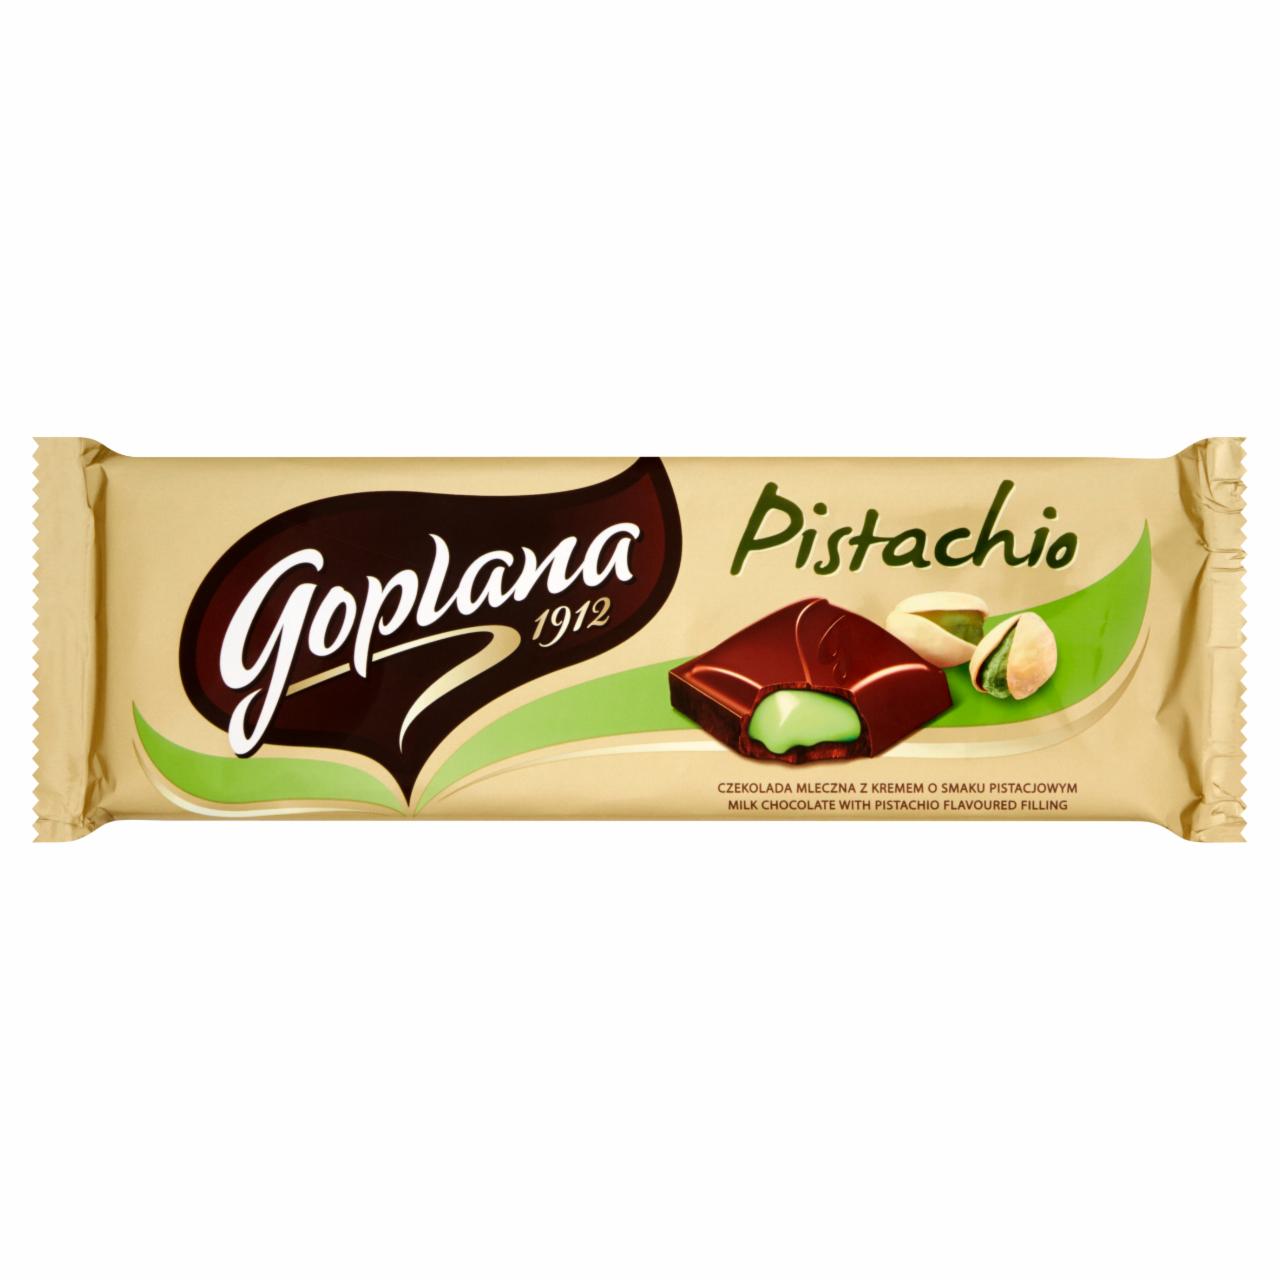 Zdjęcia - Goplana Pistachio Czekolada mleczna z kremem o smaku pistacjowym 245 g